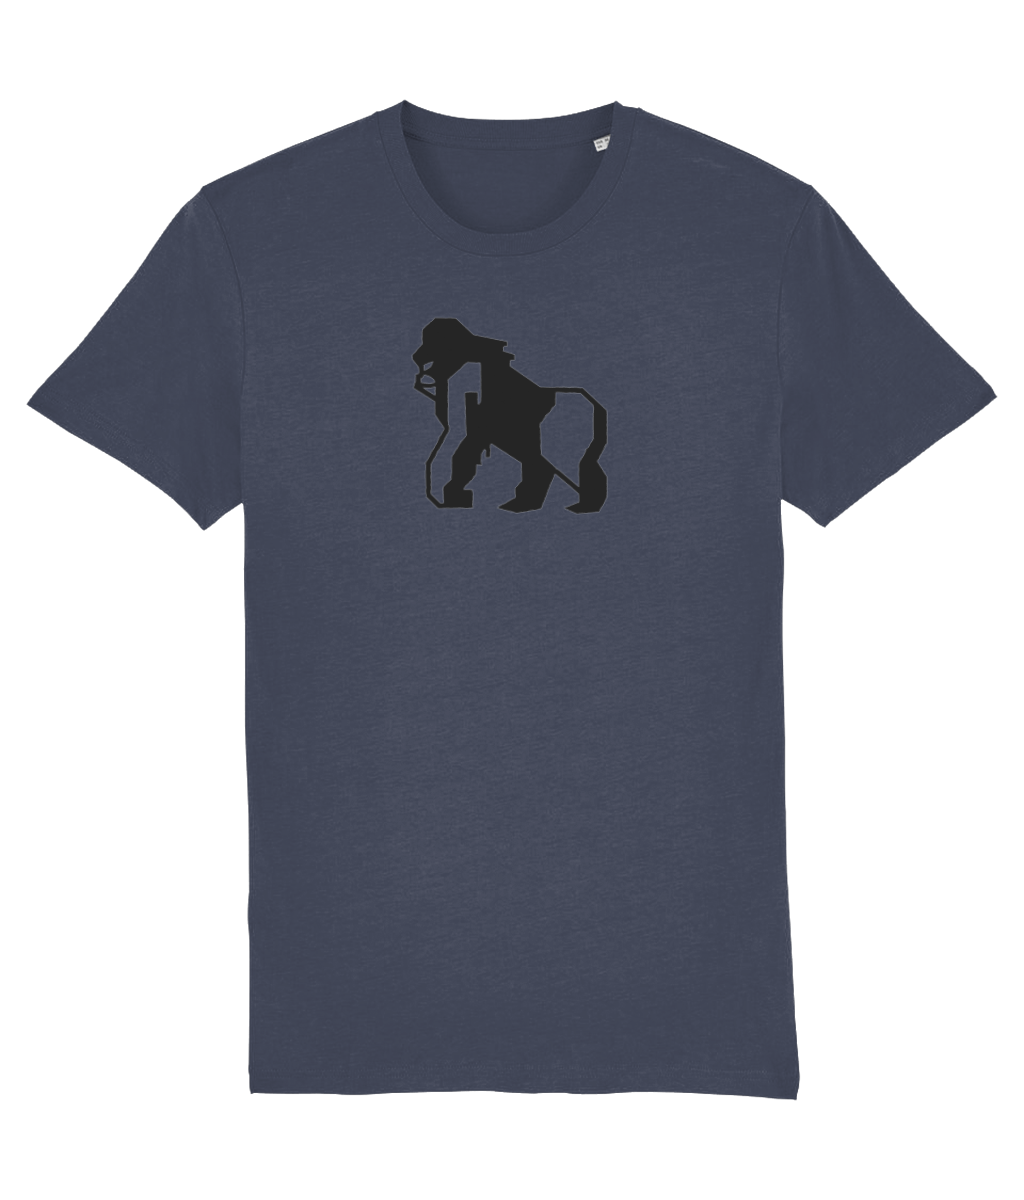 India Ink Grey Gorilla/Gayrilla Organic Cotton T-Shirt